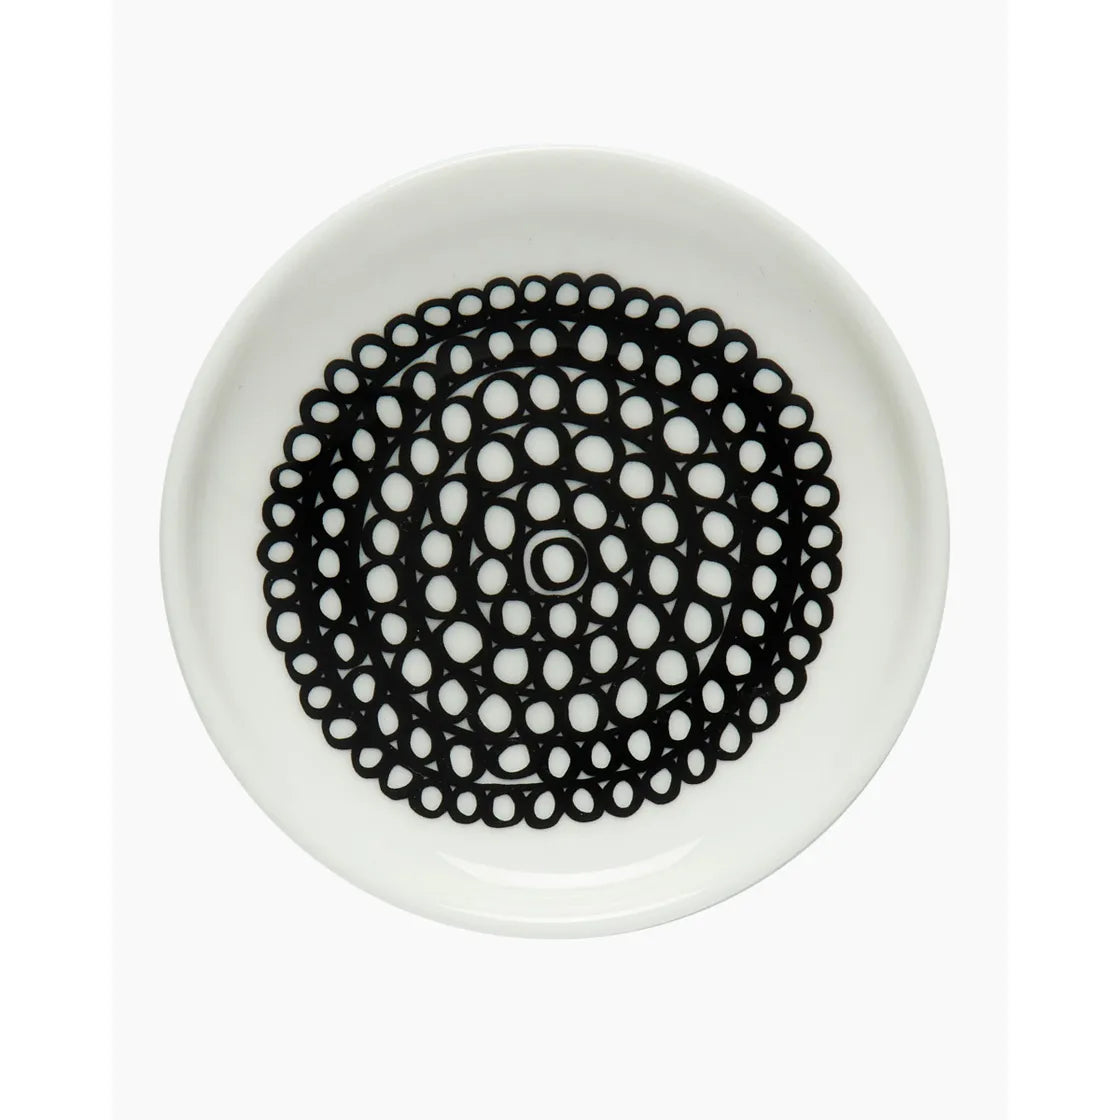 Oiva / Siirtolapuutarha plate 8,5 cm black / white 069663 190